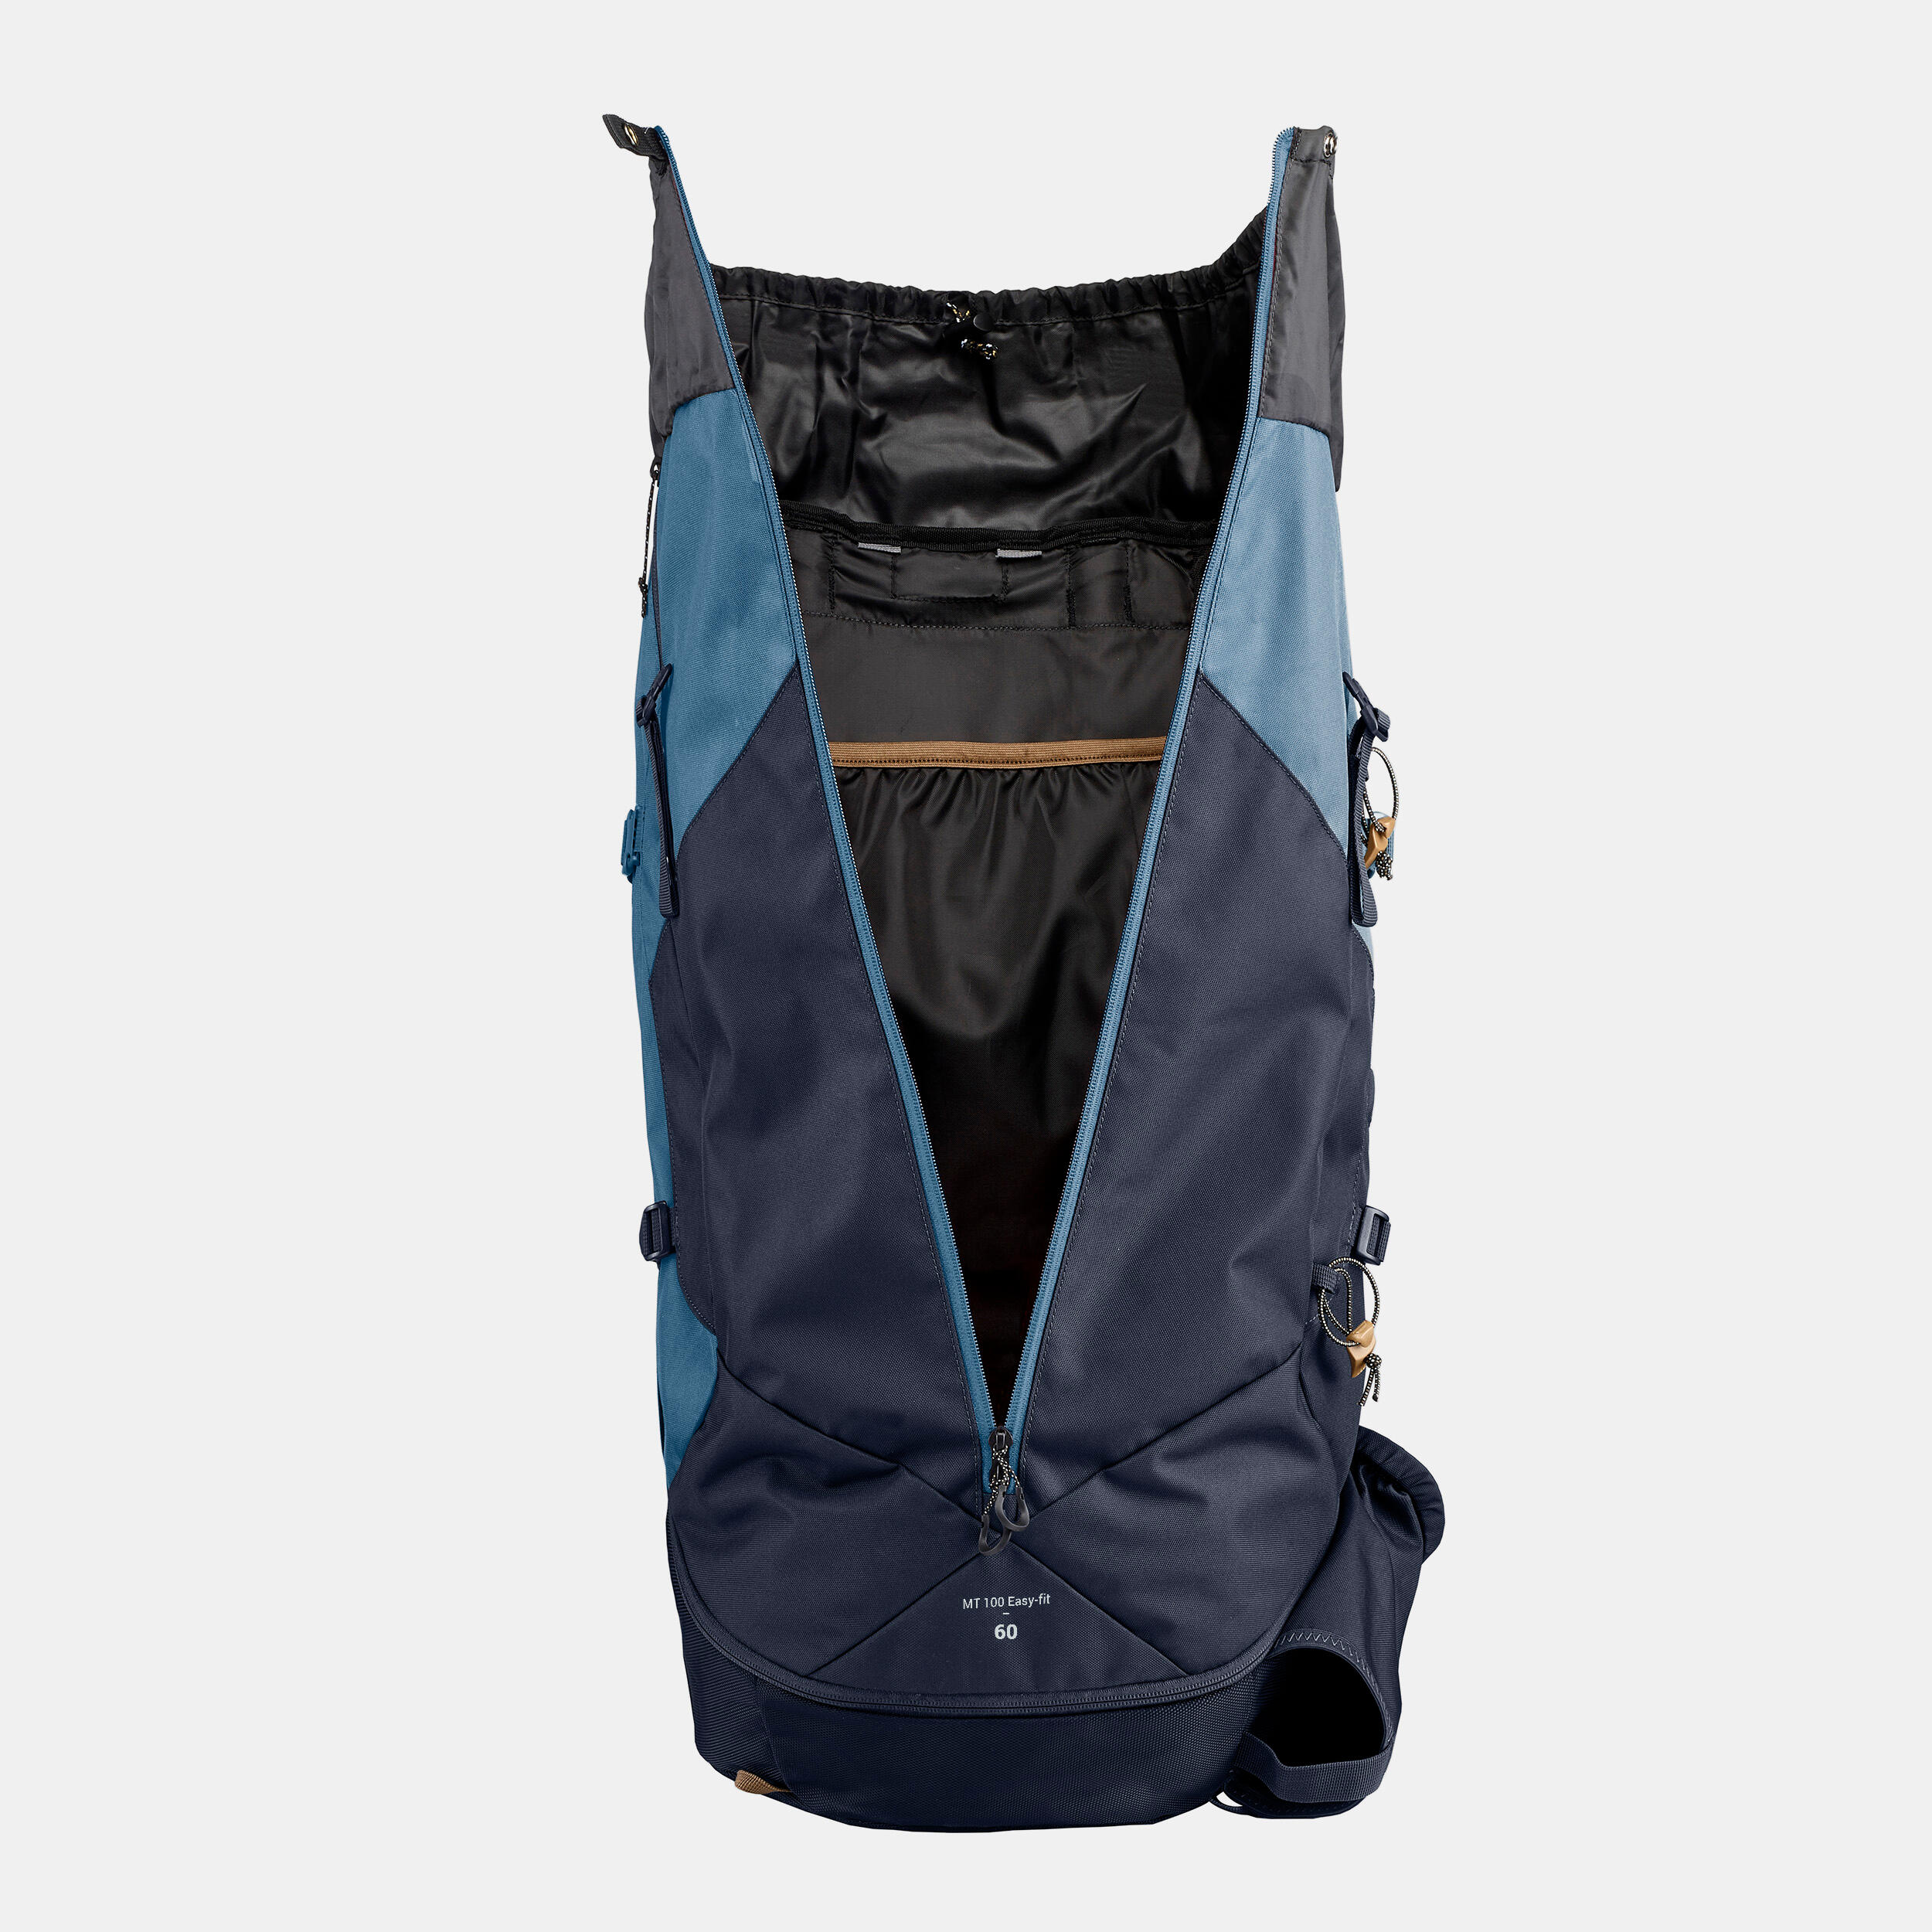 MT 100 Easyfit hiking backpack 60 L - Women - FORCLAZ